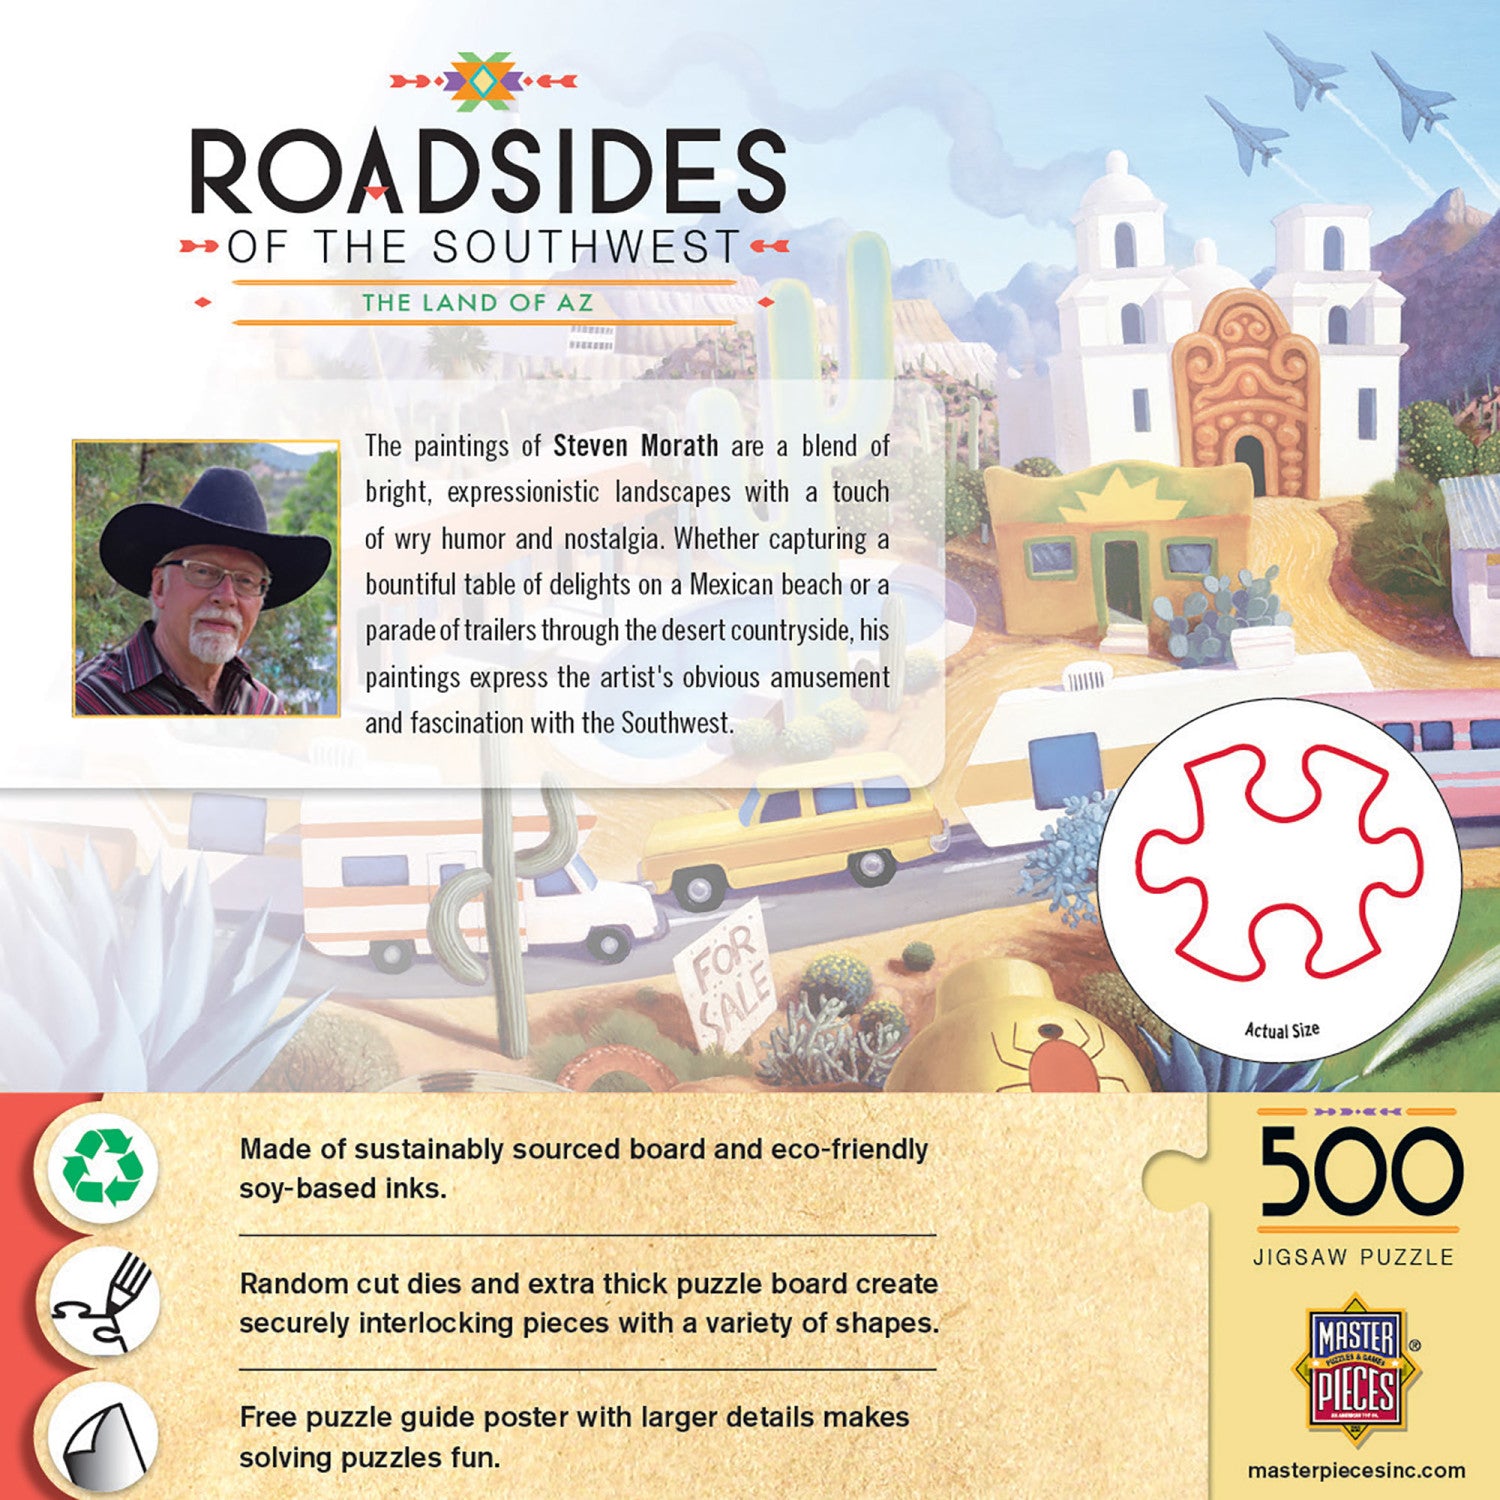 Roadsides of the Southwest - Land of AZ 500 Piece Jigsaw Puzzle